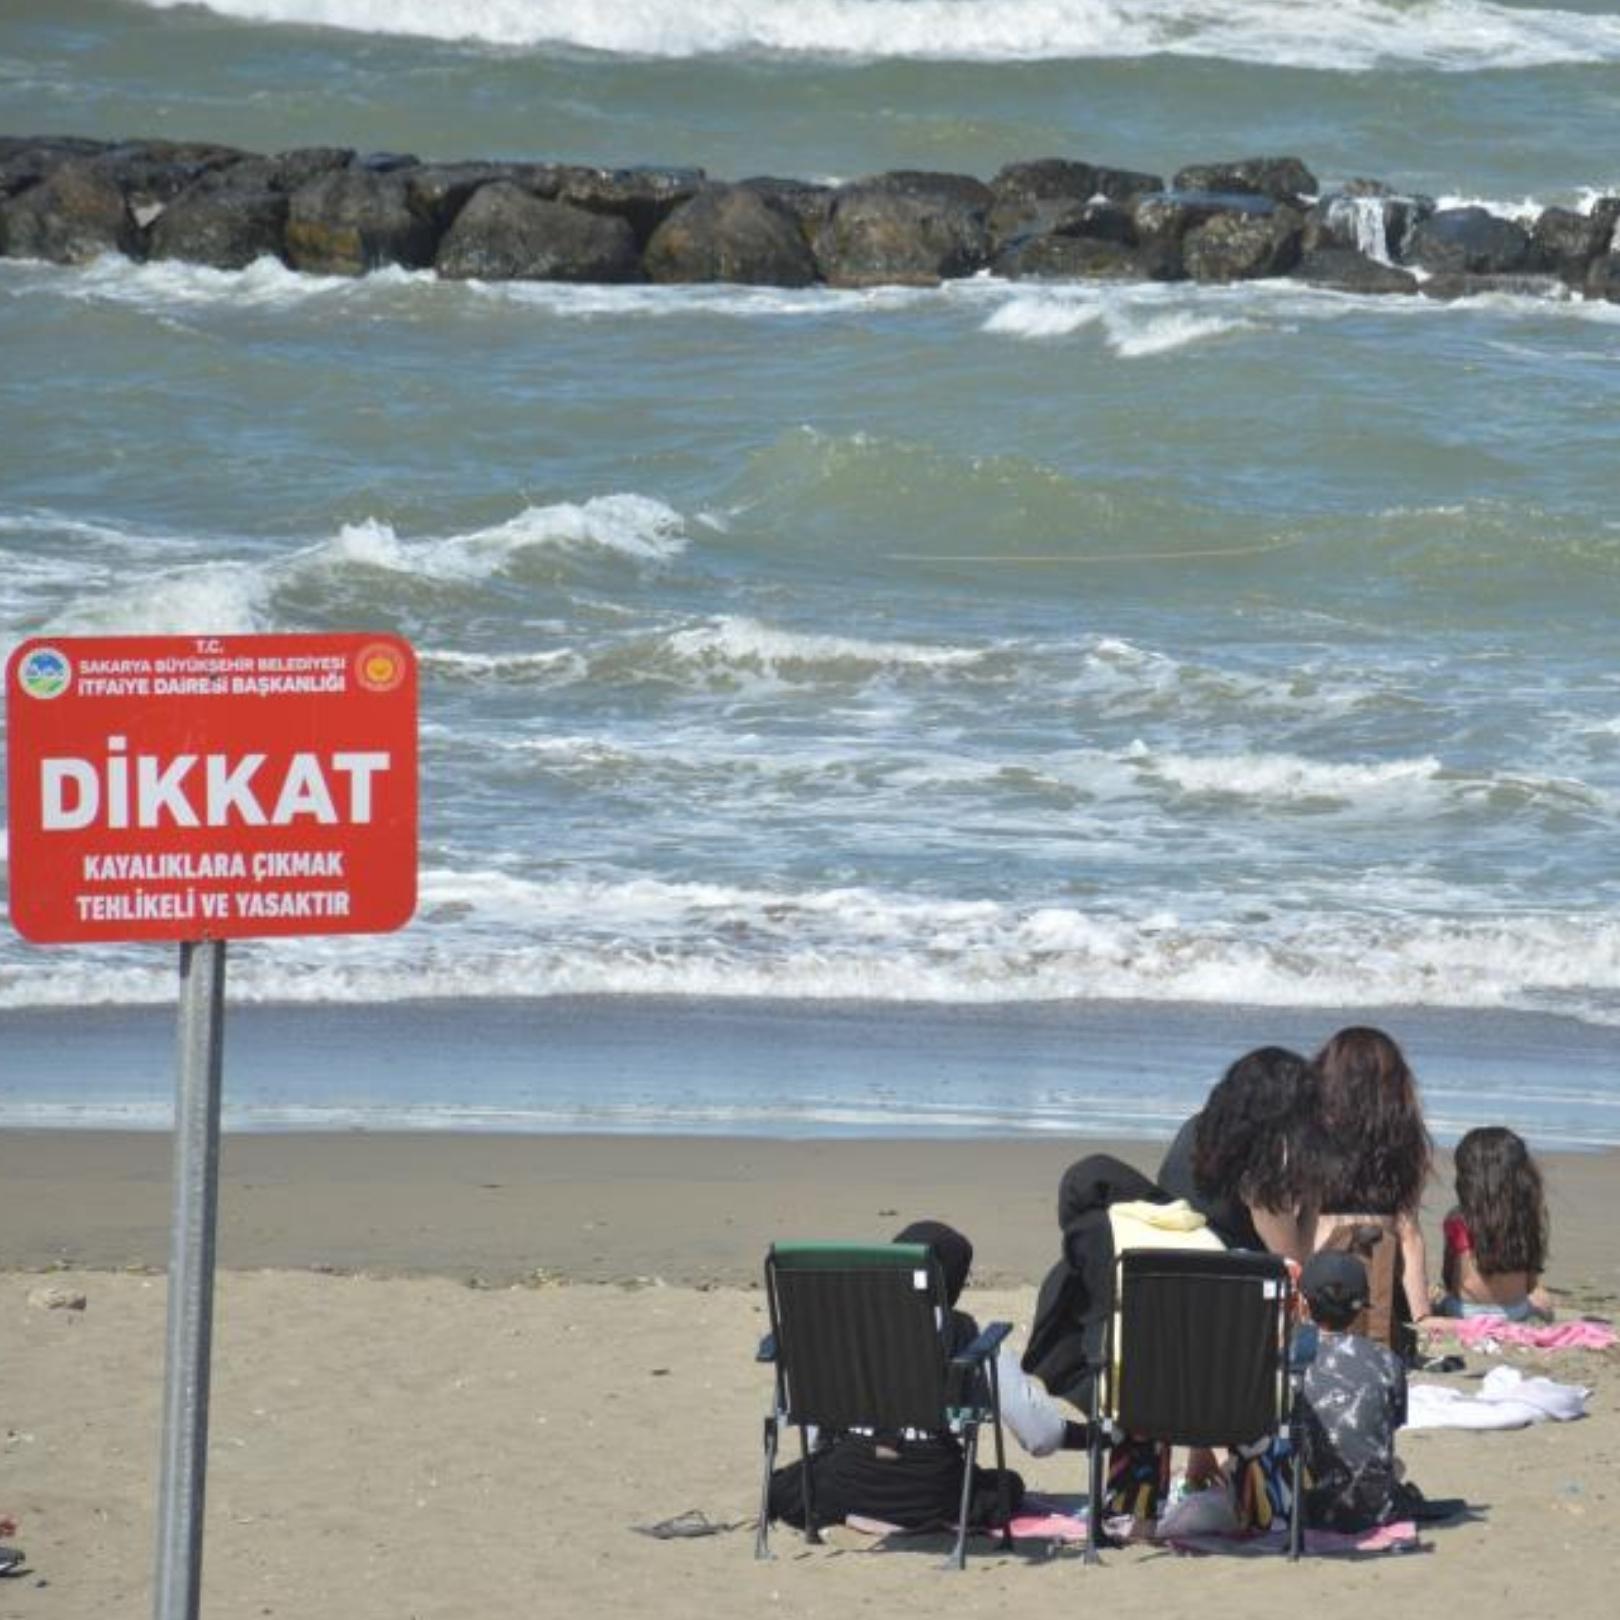 Binlerce tatilci oraya akın ediyordu, denize girmek yasaklandı